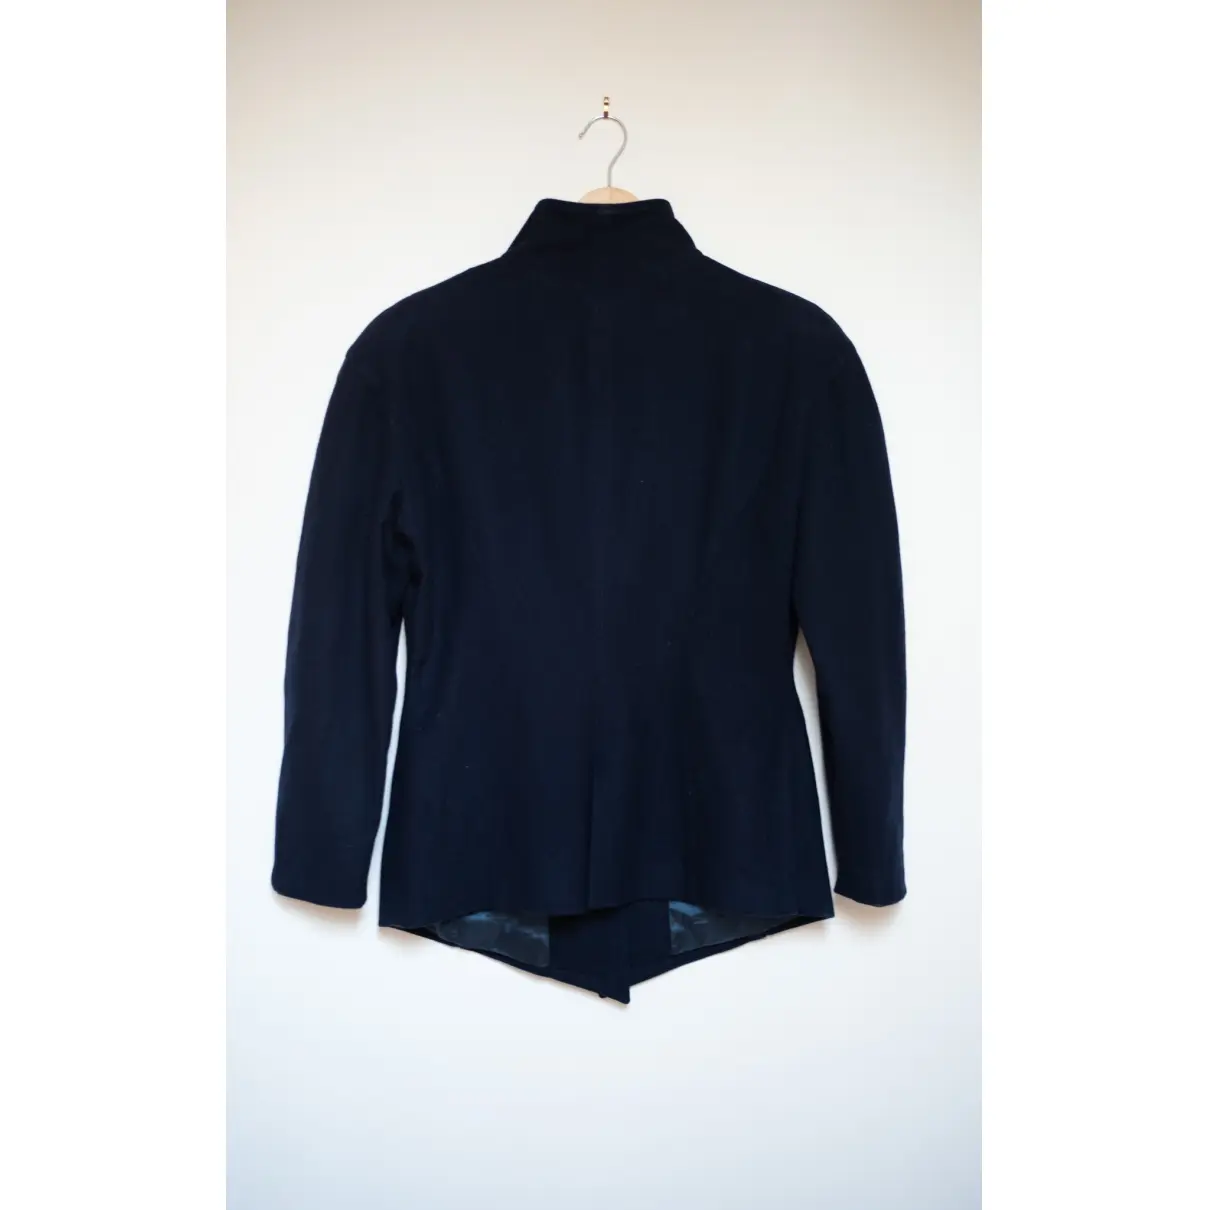 Buy Thierry Mugler Wool jacket online - Vintage